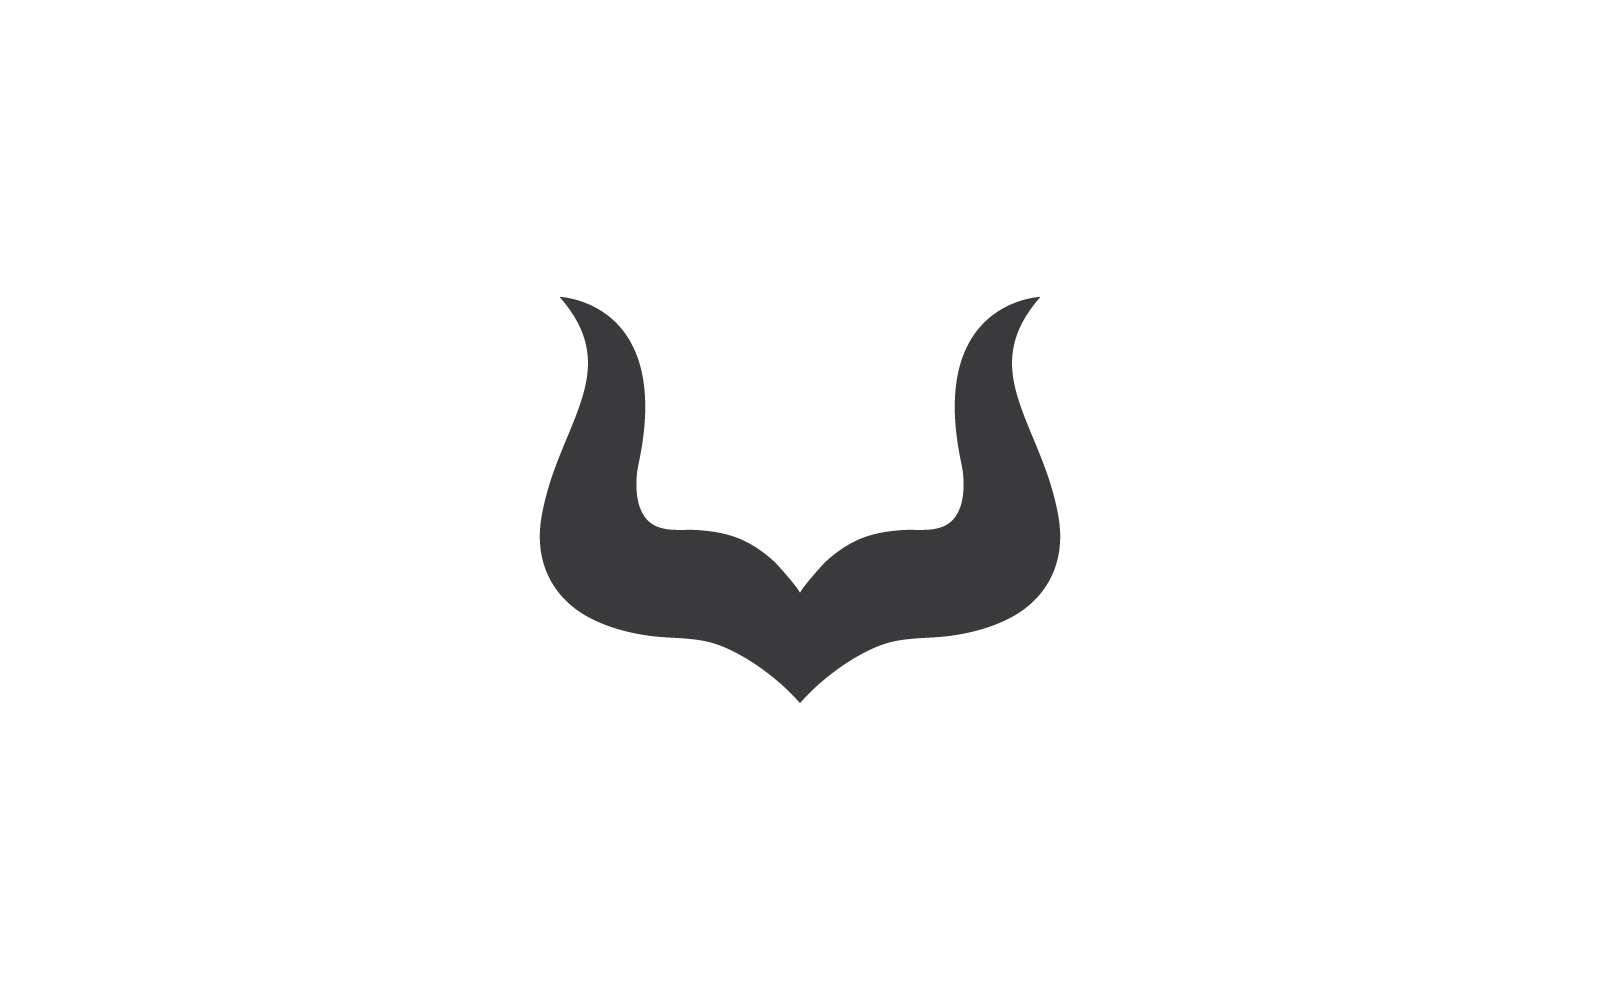 Horn logo design vector logo template